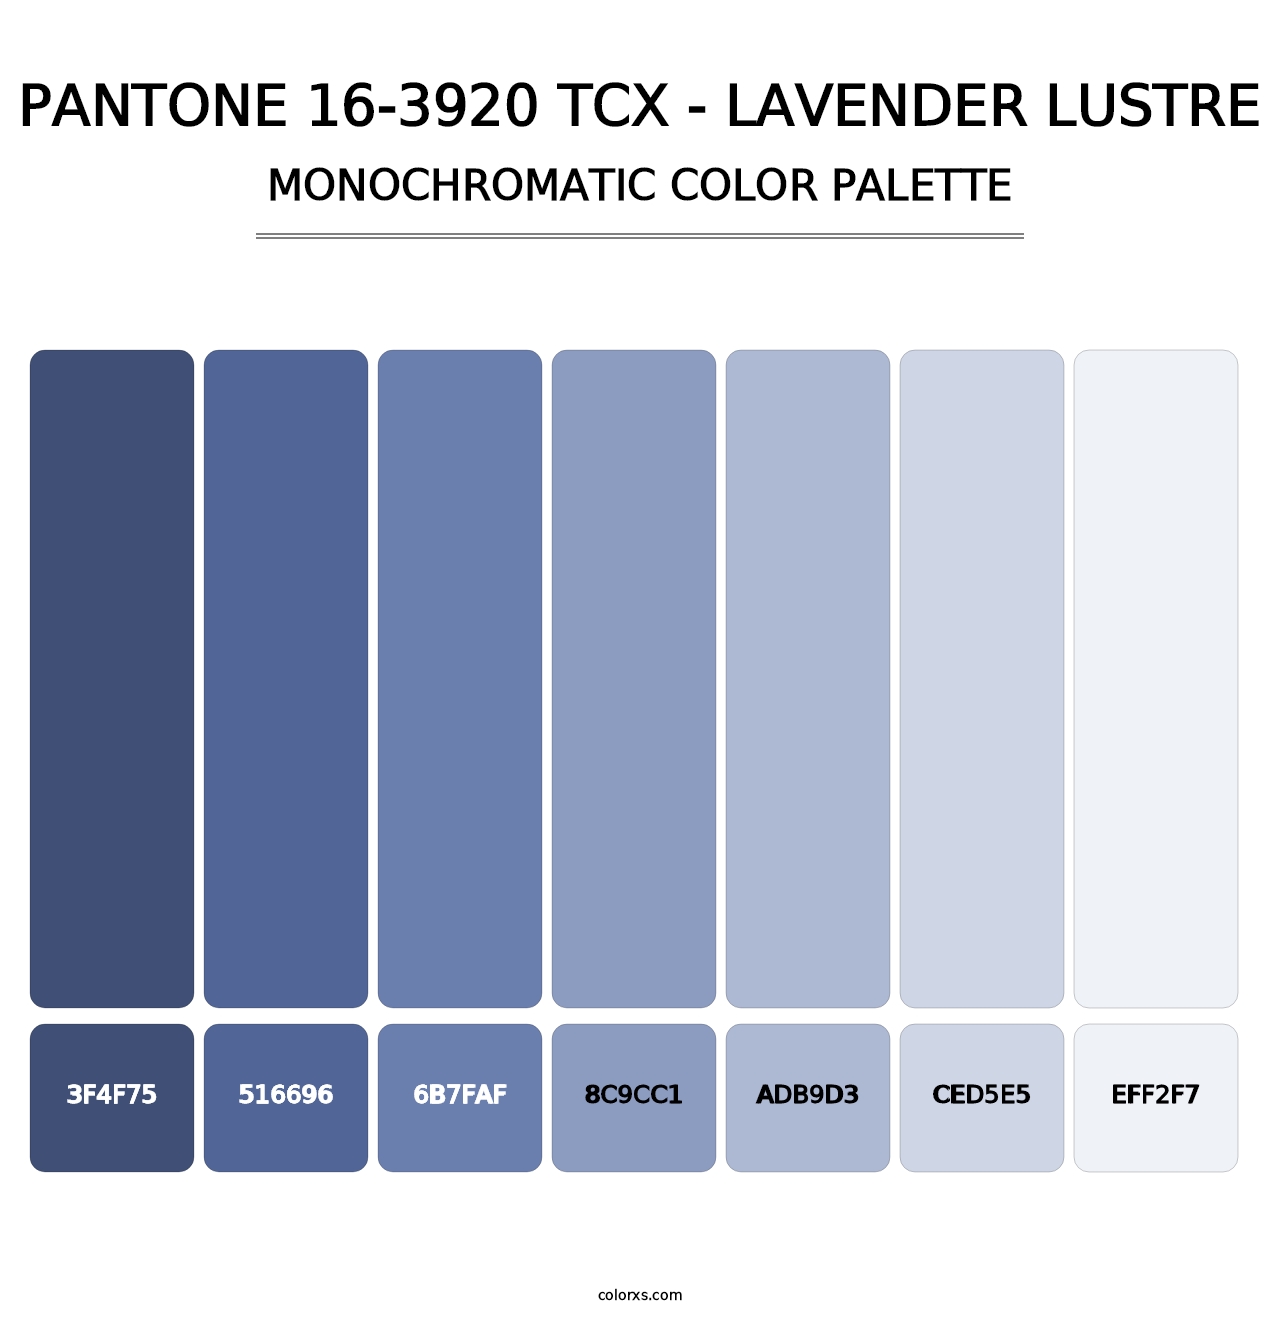 PANTONE 16-3920 TCX - Lavender Lustre - Monochromatic Color Palette